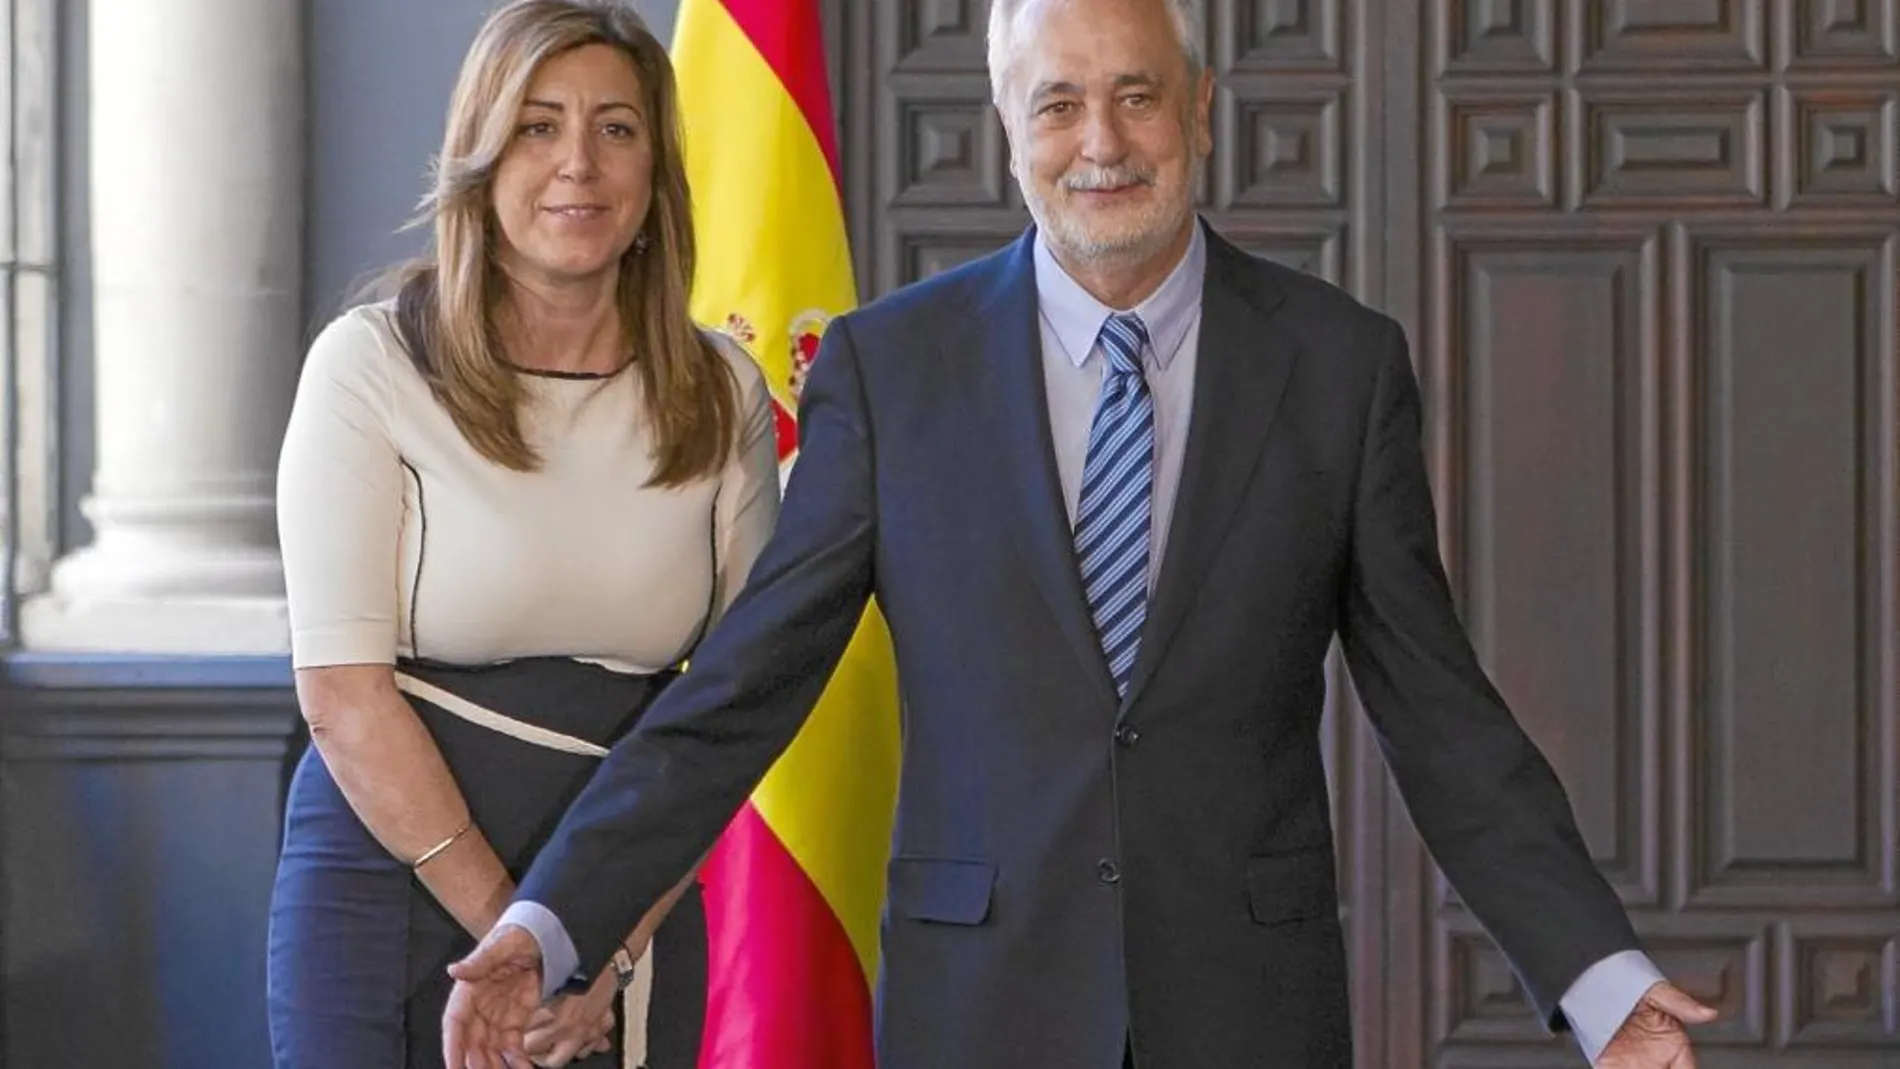 Susana Díaz tomará el relevo que le cede José Antonio Griñán en septiembre